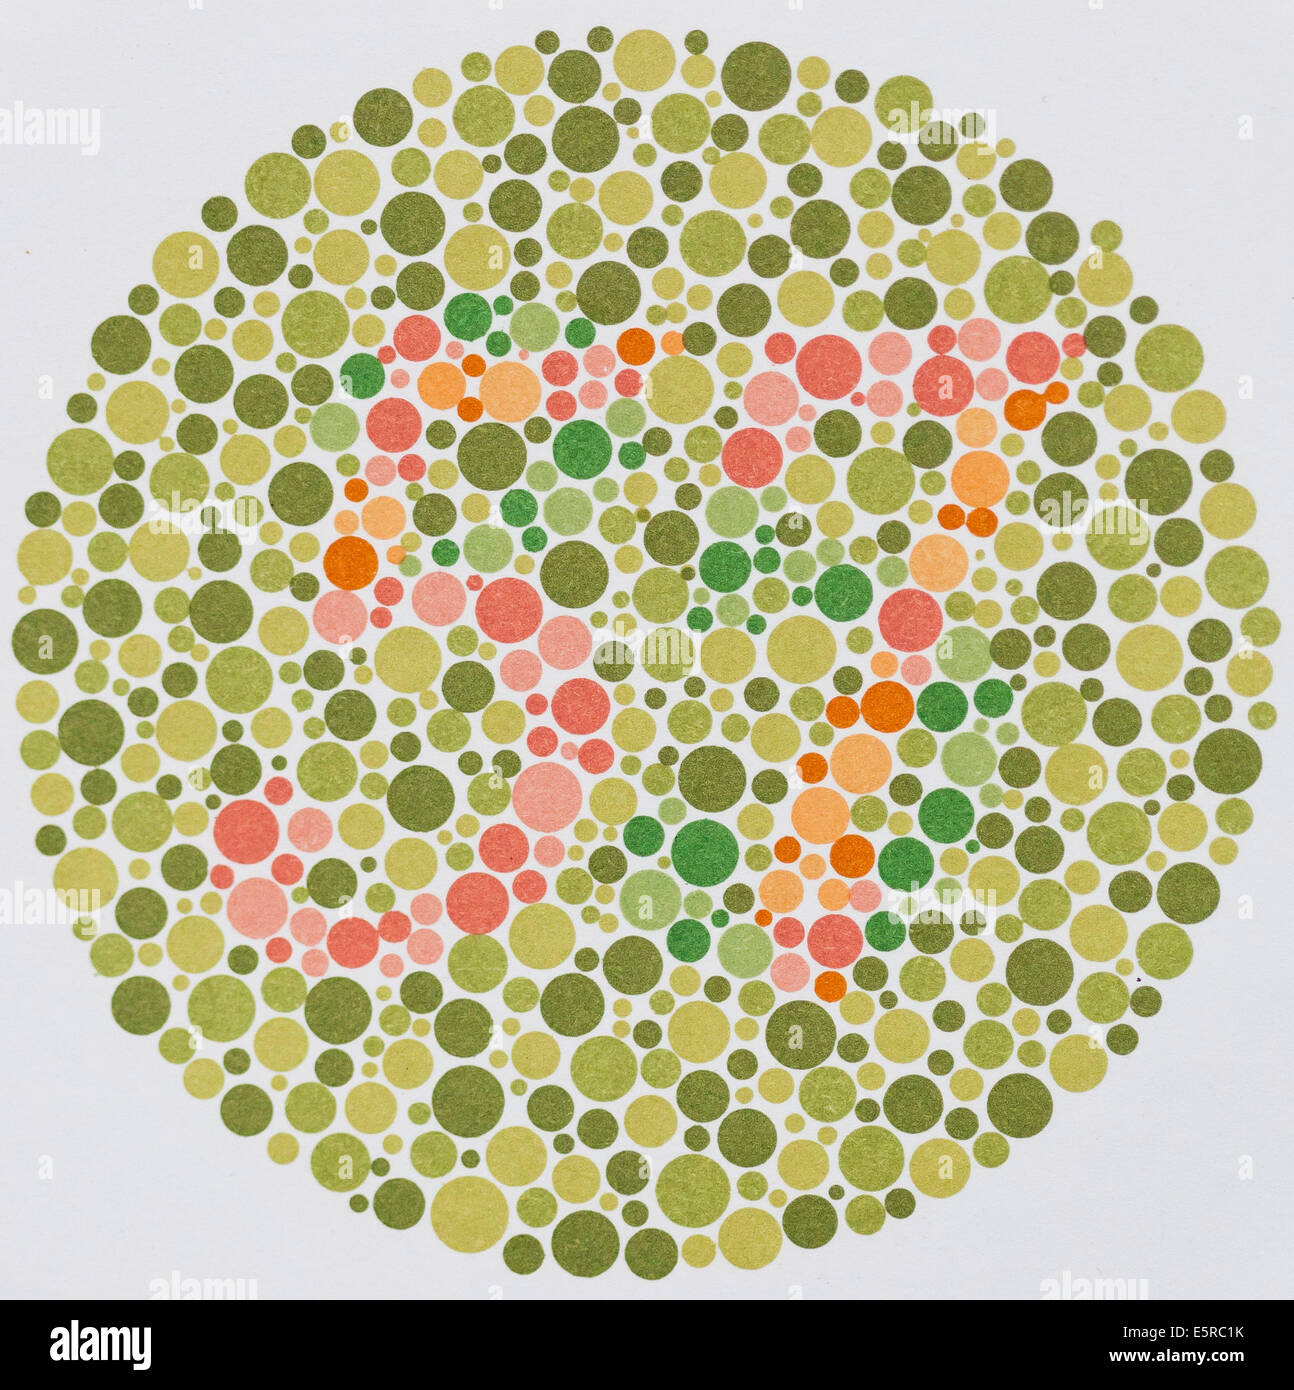 Bạn có biết rằng bài kiểm tra mù màu là thủ thuật đơn giản để phát hiện các loại rối loạn sắc thái màu? Hãy xem hình ảnh này để biết thêm thông tin về cách kiểm tra mù màu và tìm hiểu về kỹ thuật kiểm tra mù màu này.